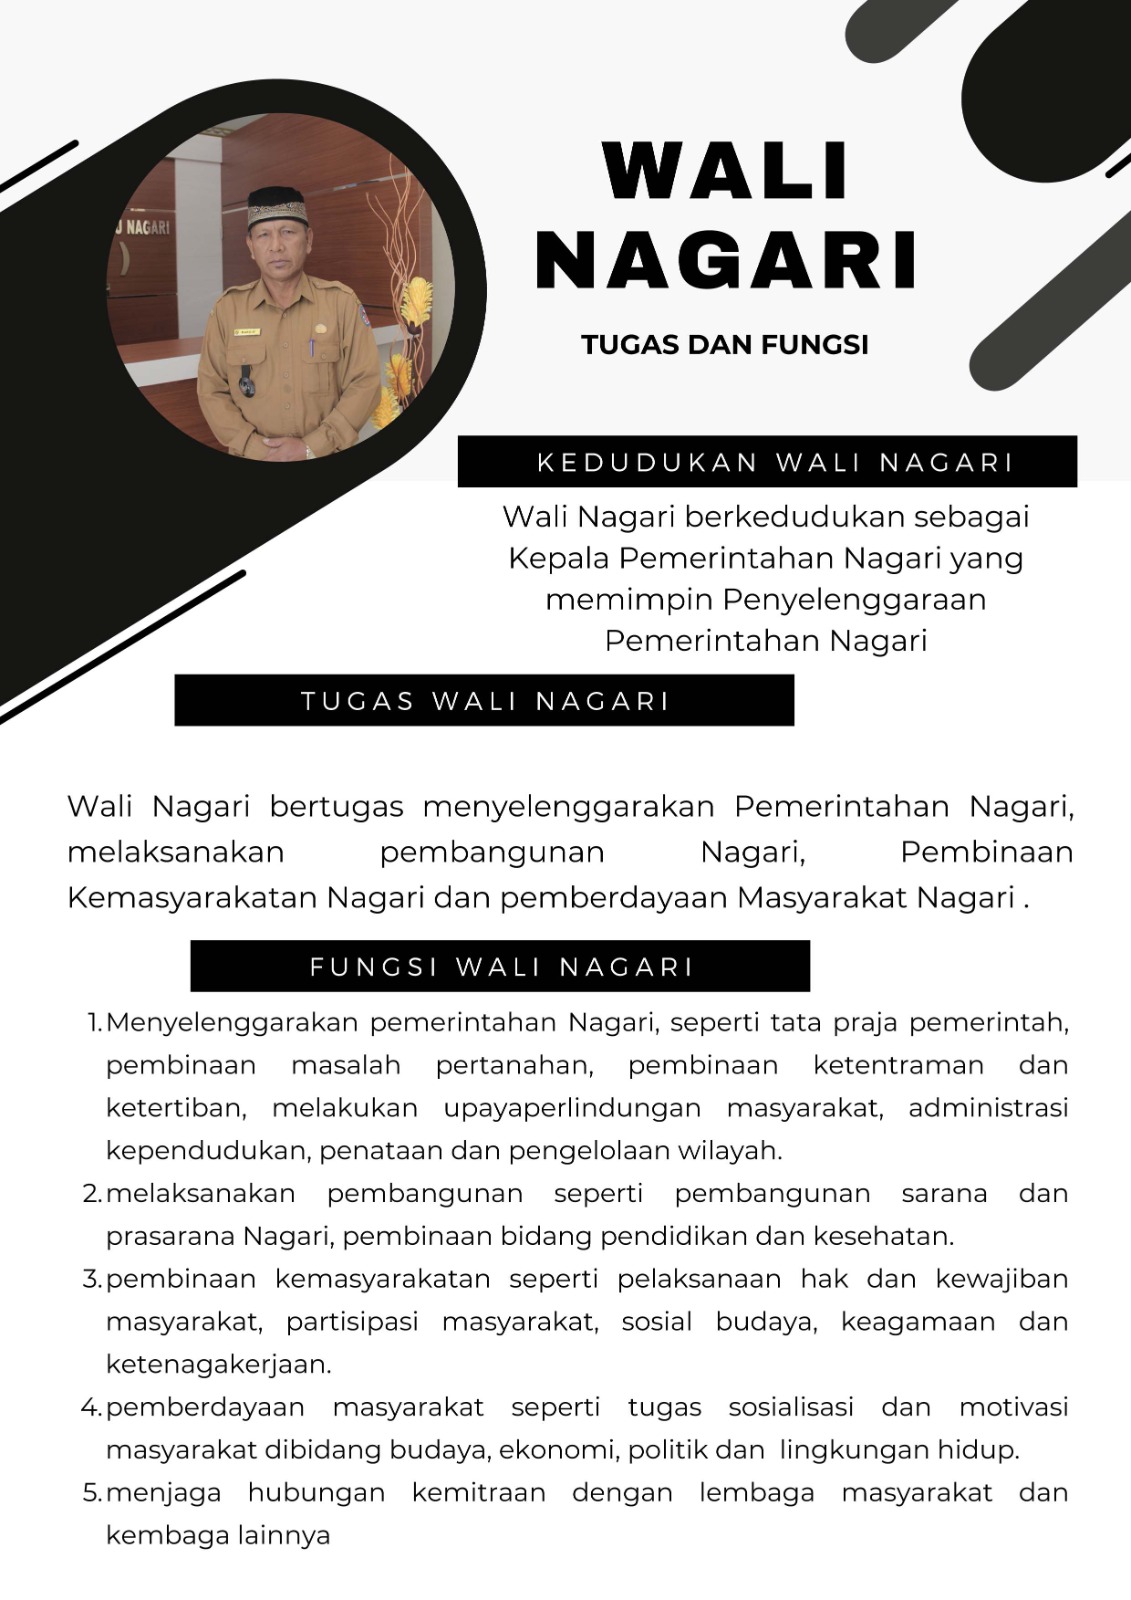 Wali Nagari